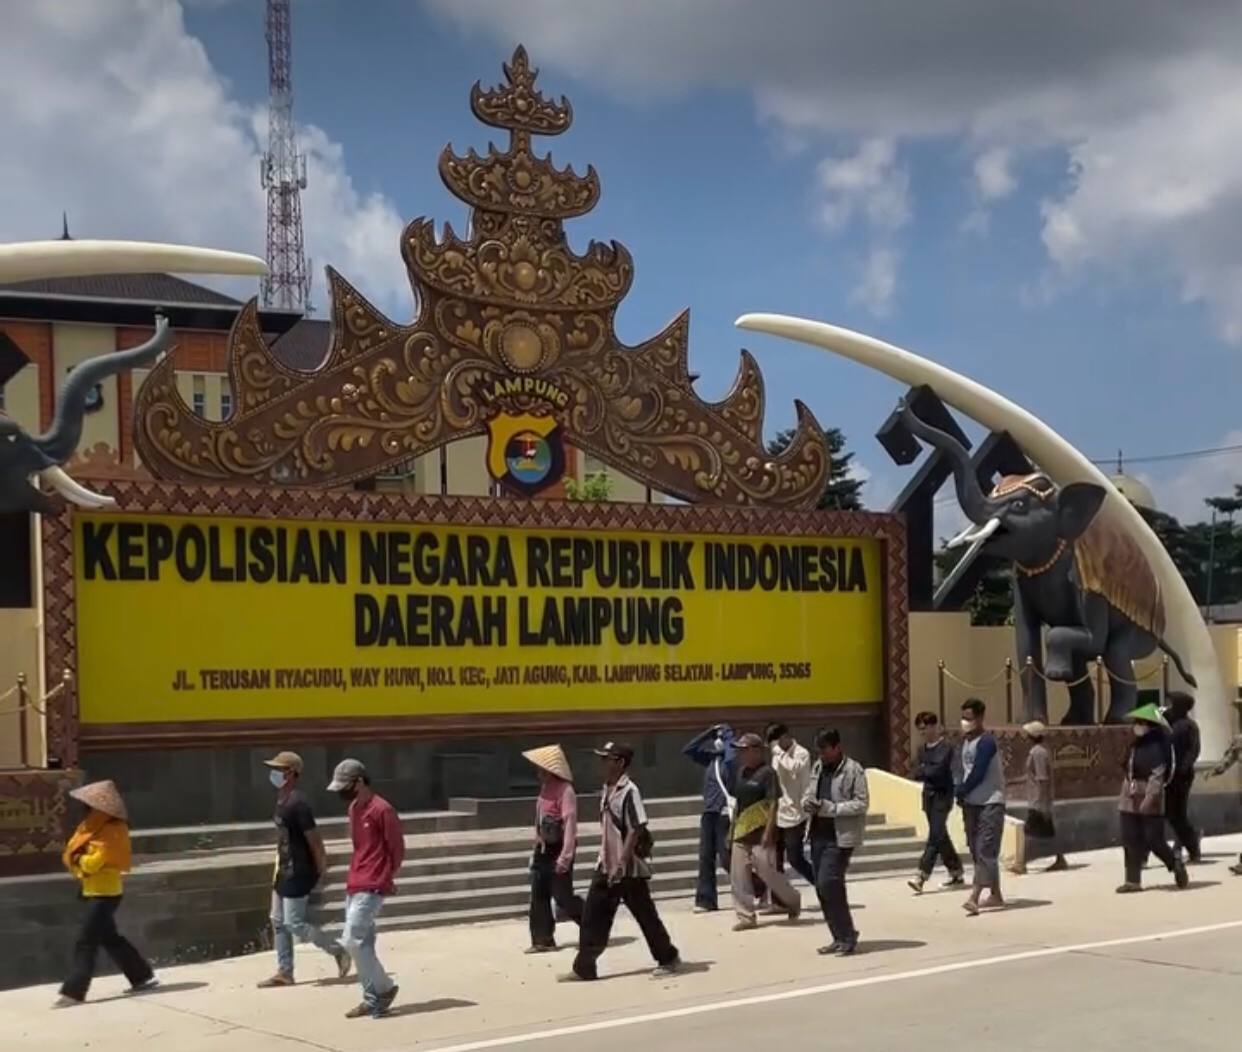 Petani Kota Baru Laporkan Pemprov ke Polda Lampung saat Penertiban Lahan